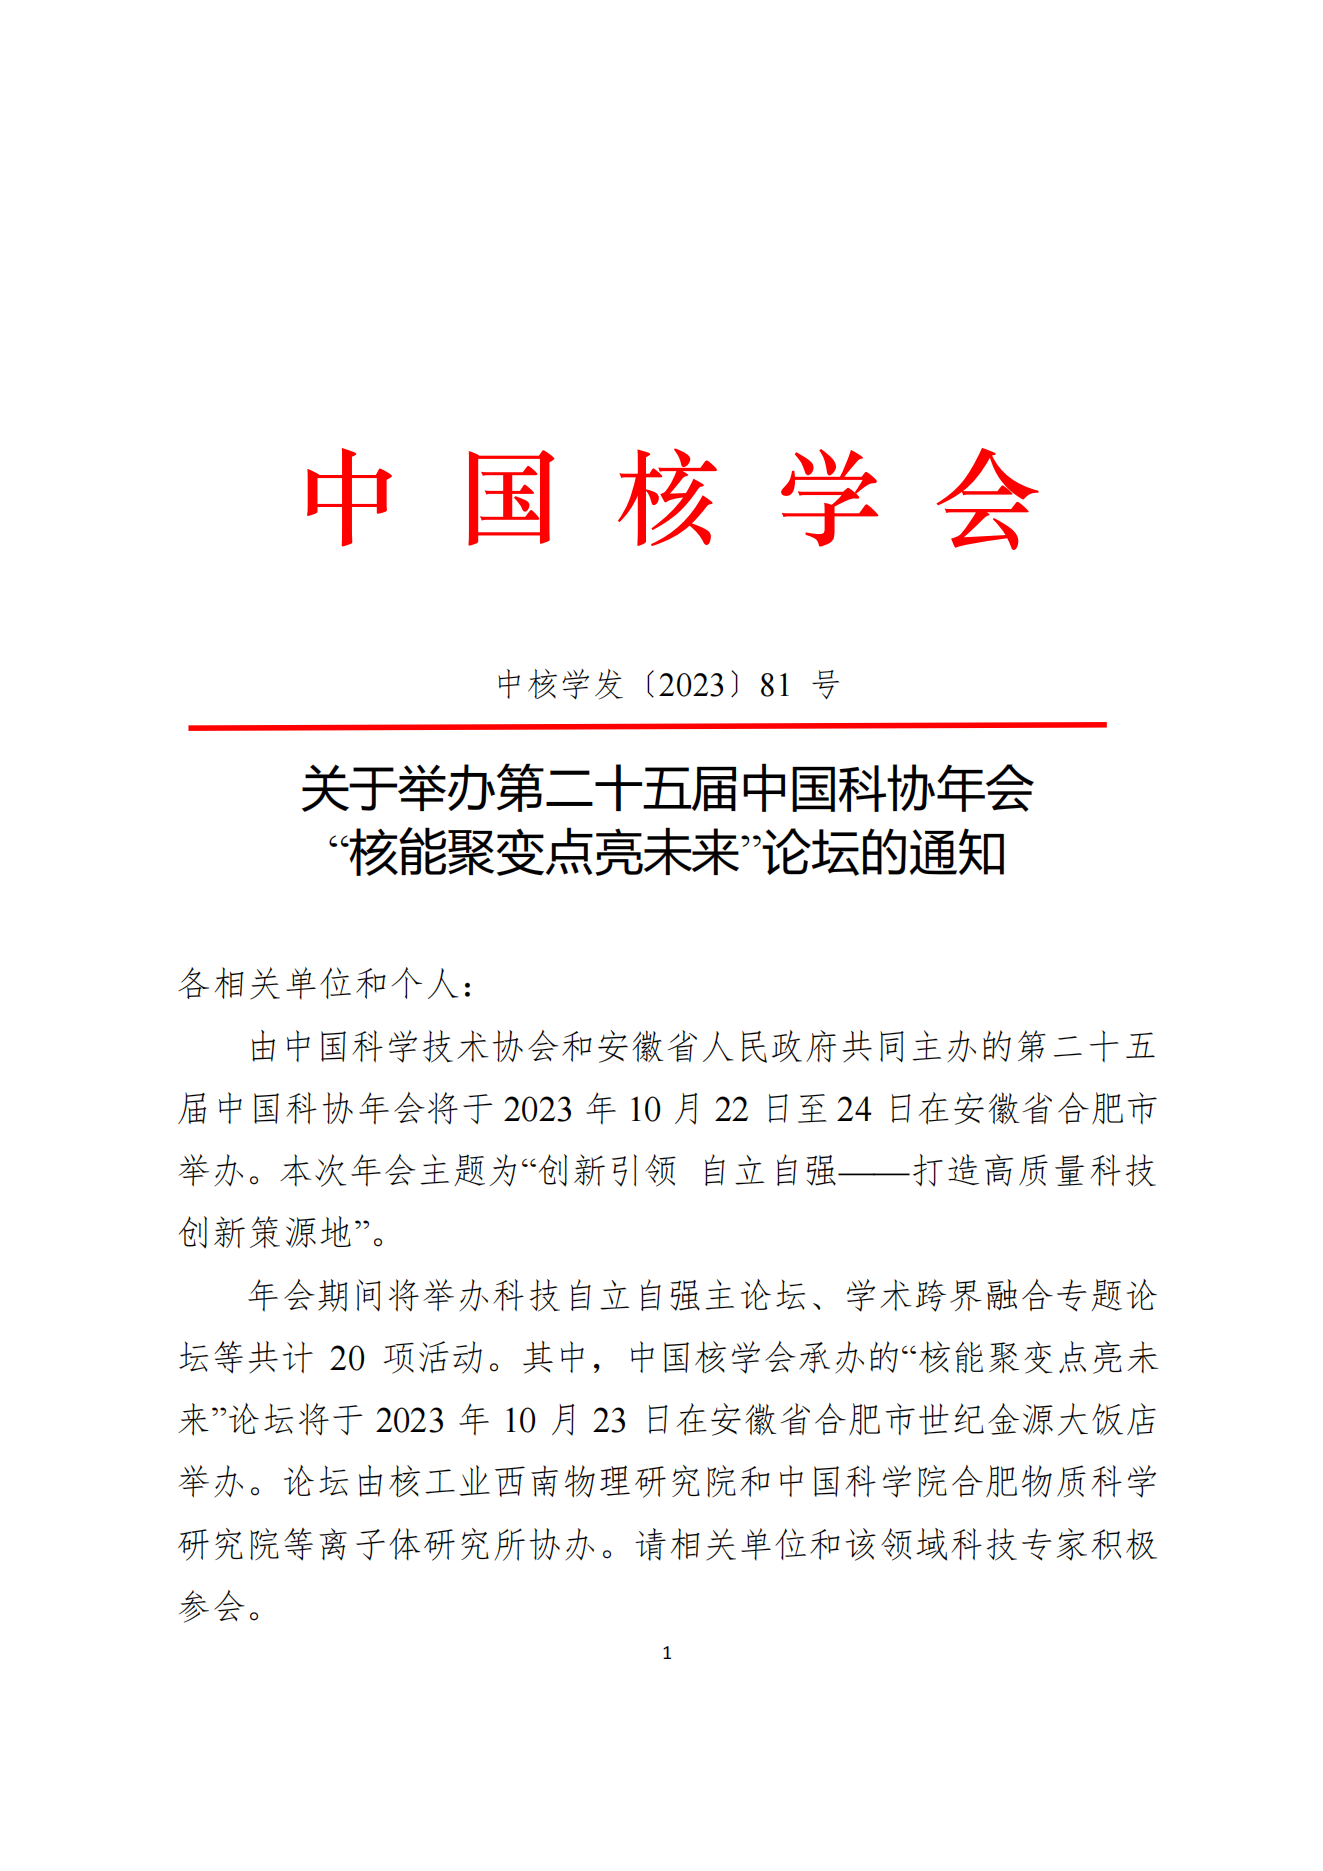 关于举办第二十五届中国科协年会“核能聚变点亮未来”论坛的通知_00.png